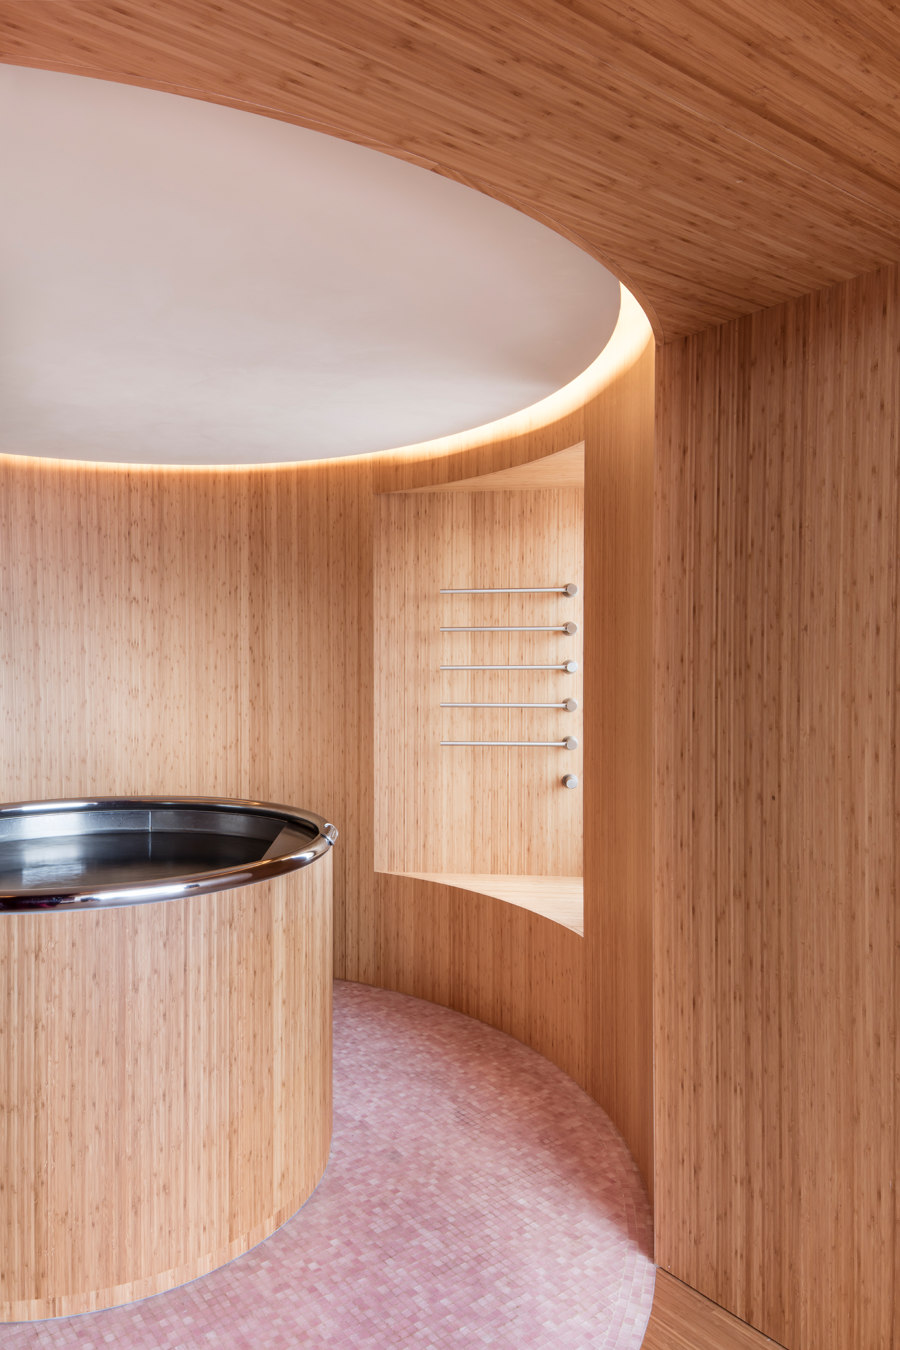 Whitepod Zen Suite de Montalba Architects | Hôtels